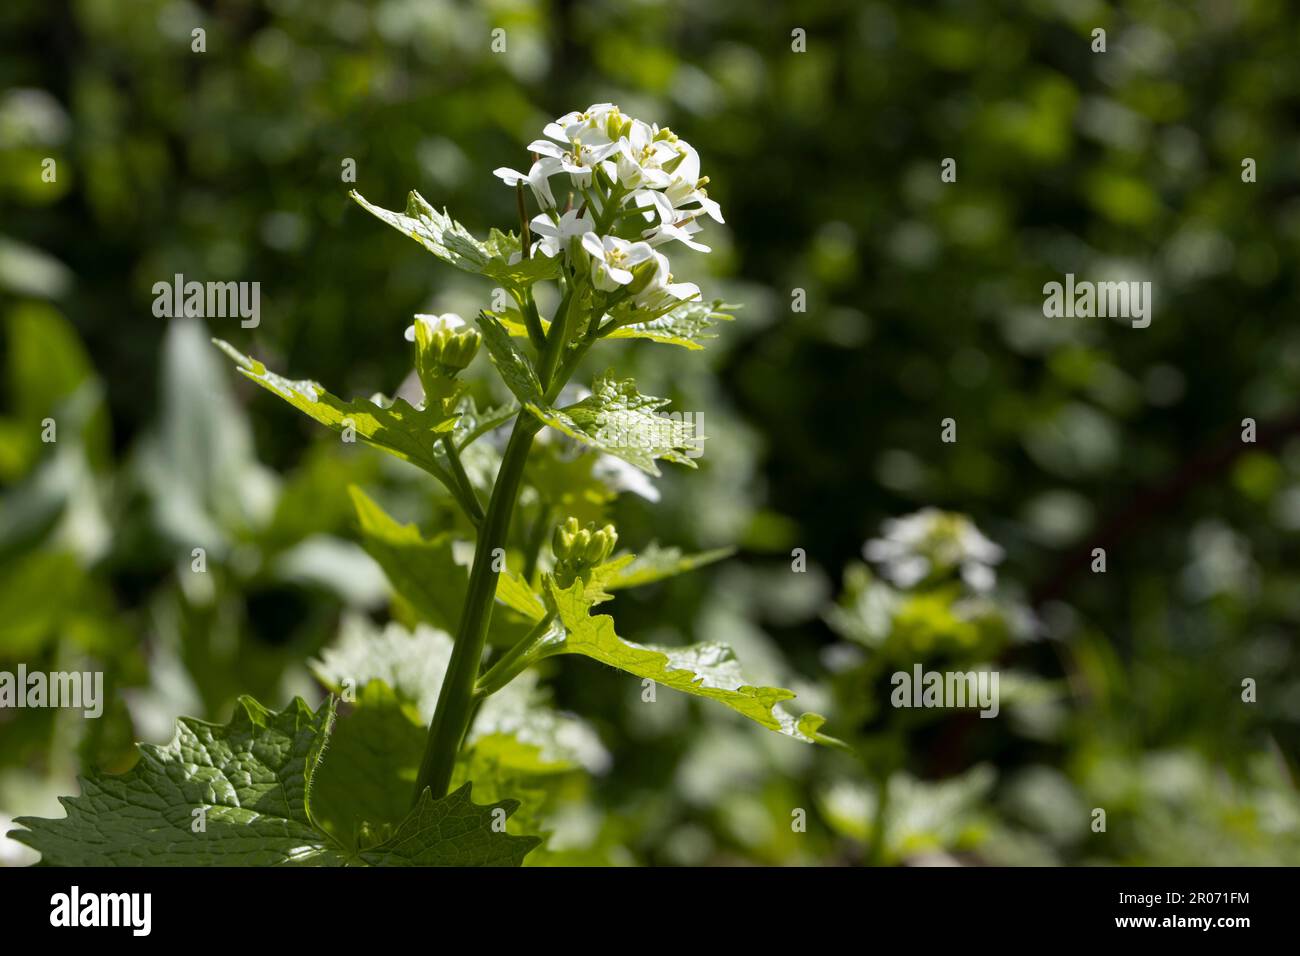 Les belles fleurs blanches de Lunaria annua également connu comme l'honnêteté, en floraison au printemps dans un cadre naturel de jardin. Copiez l'espace vers la droite. Banque D'Images